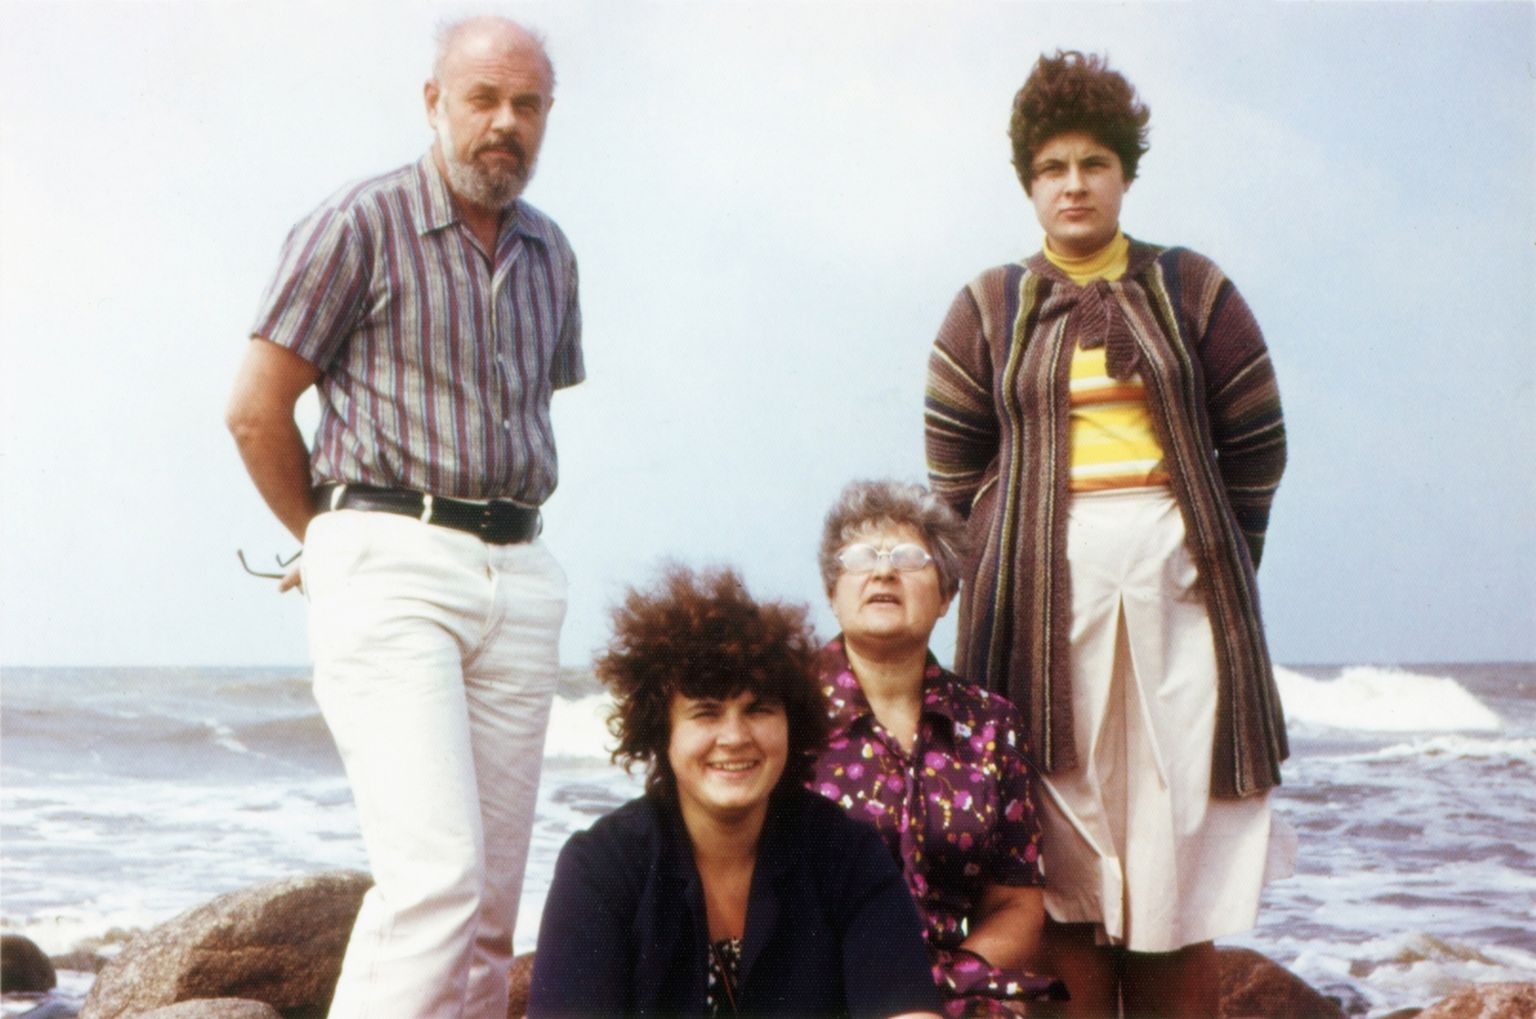 Eltermaņu ģimene pie jūras (1980. gadi)